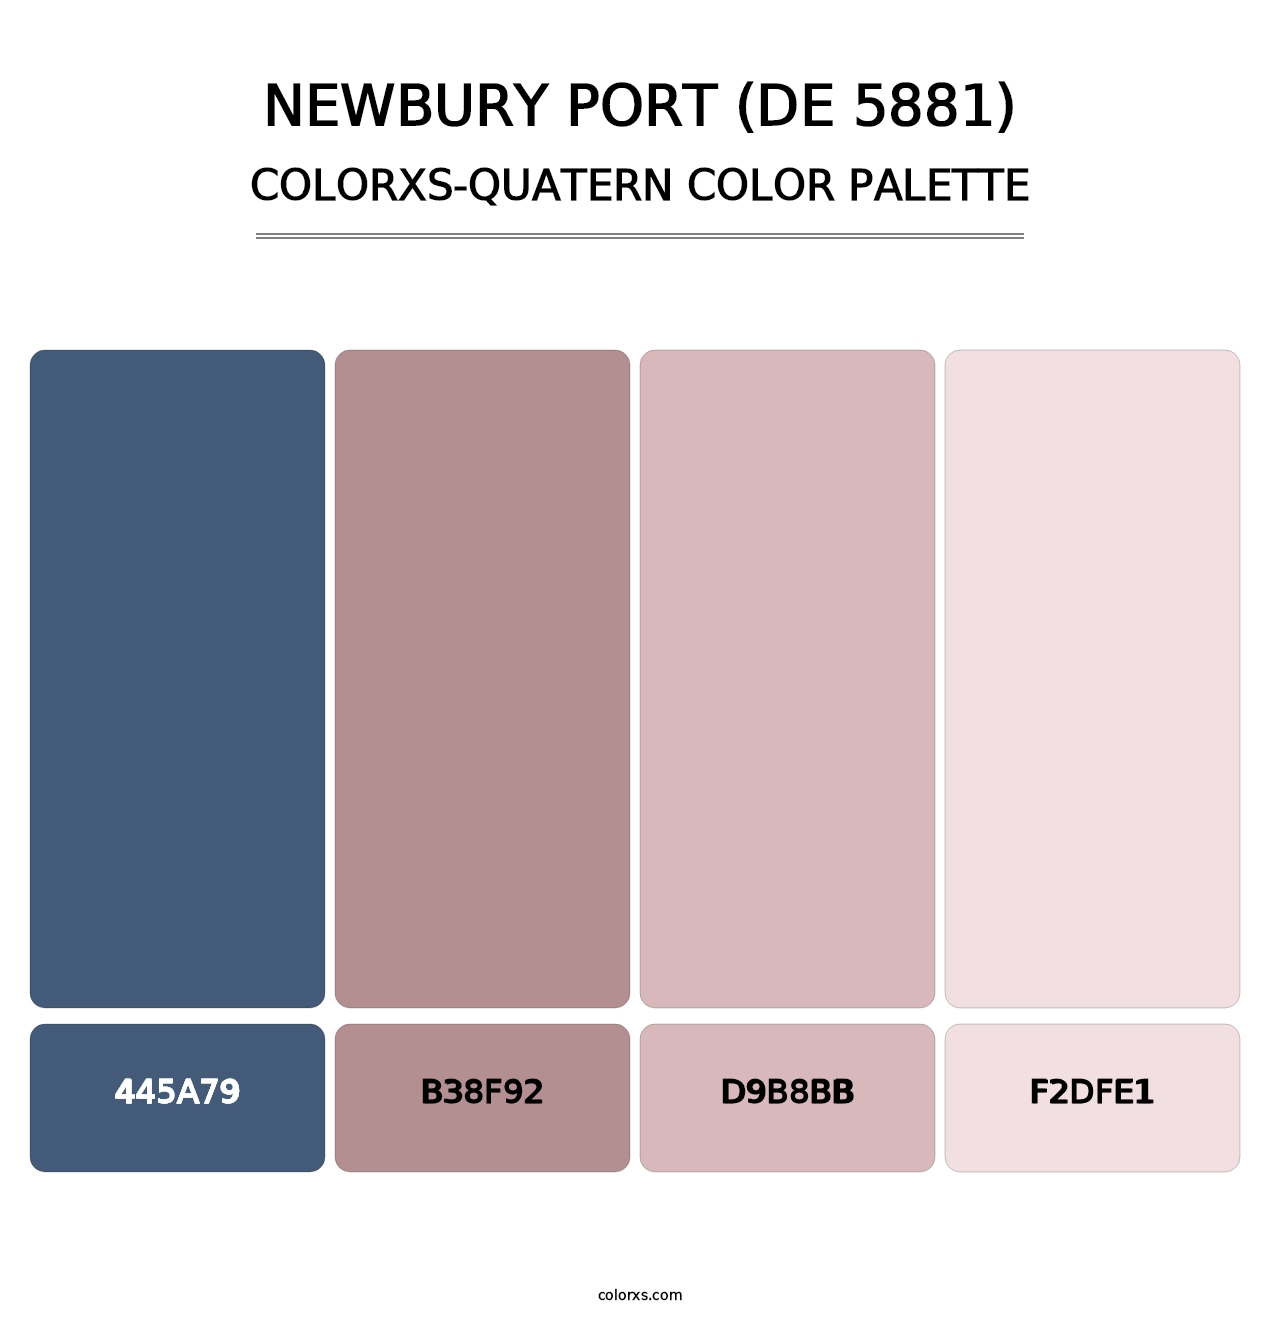 Newbury Port (DE 5881) - Colorxs Quatern Palette